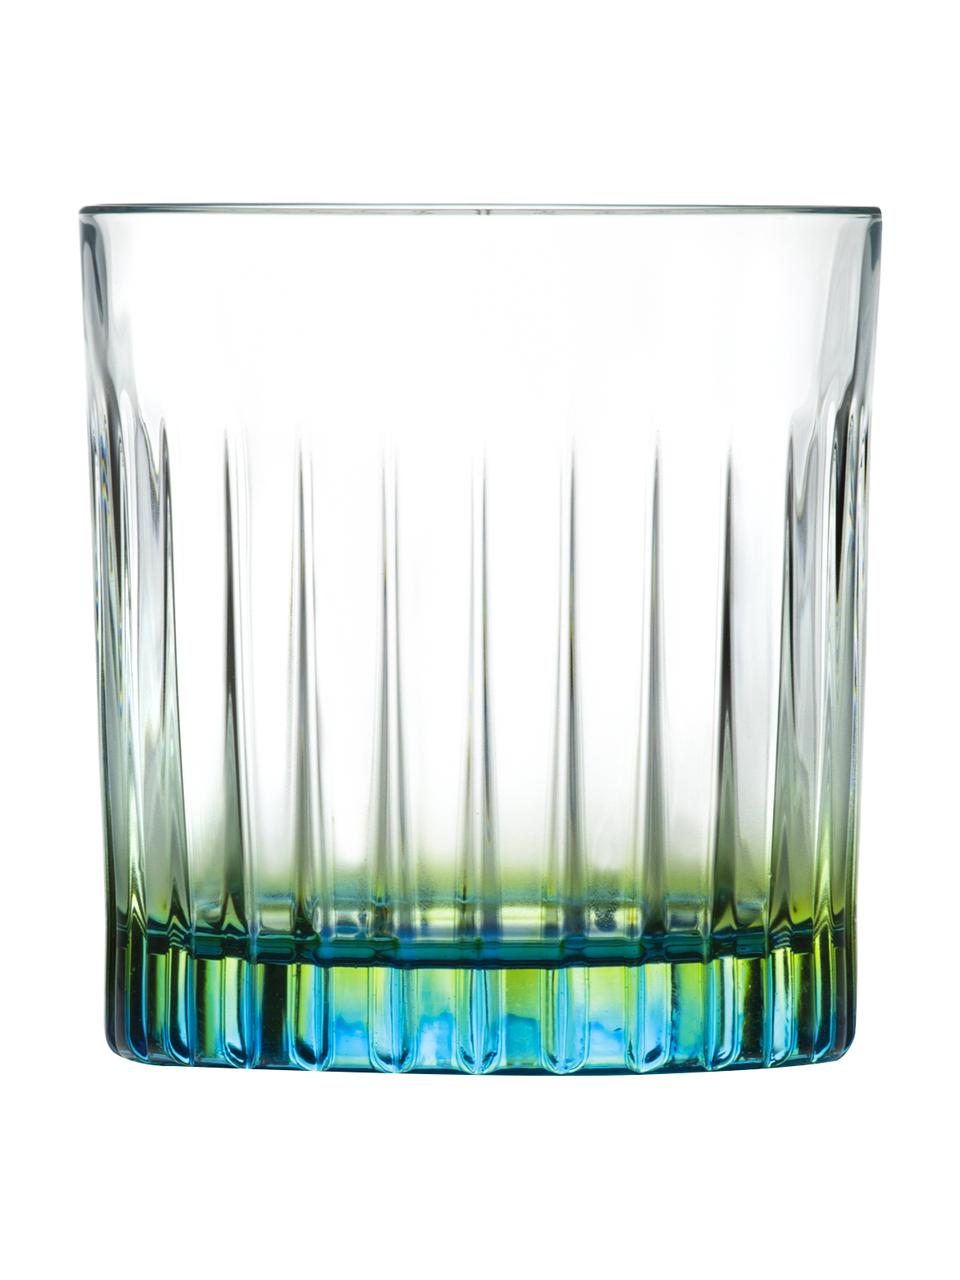 Gläser Gipsy mit zweifarbigem Luxion-Kristallglas, 6 Stück, Luxion-Kristallglas, Transparent, Grüngelb, Türkis, Ø 8 x H 9 cm